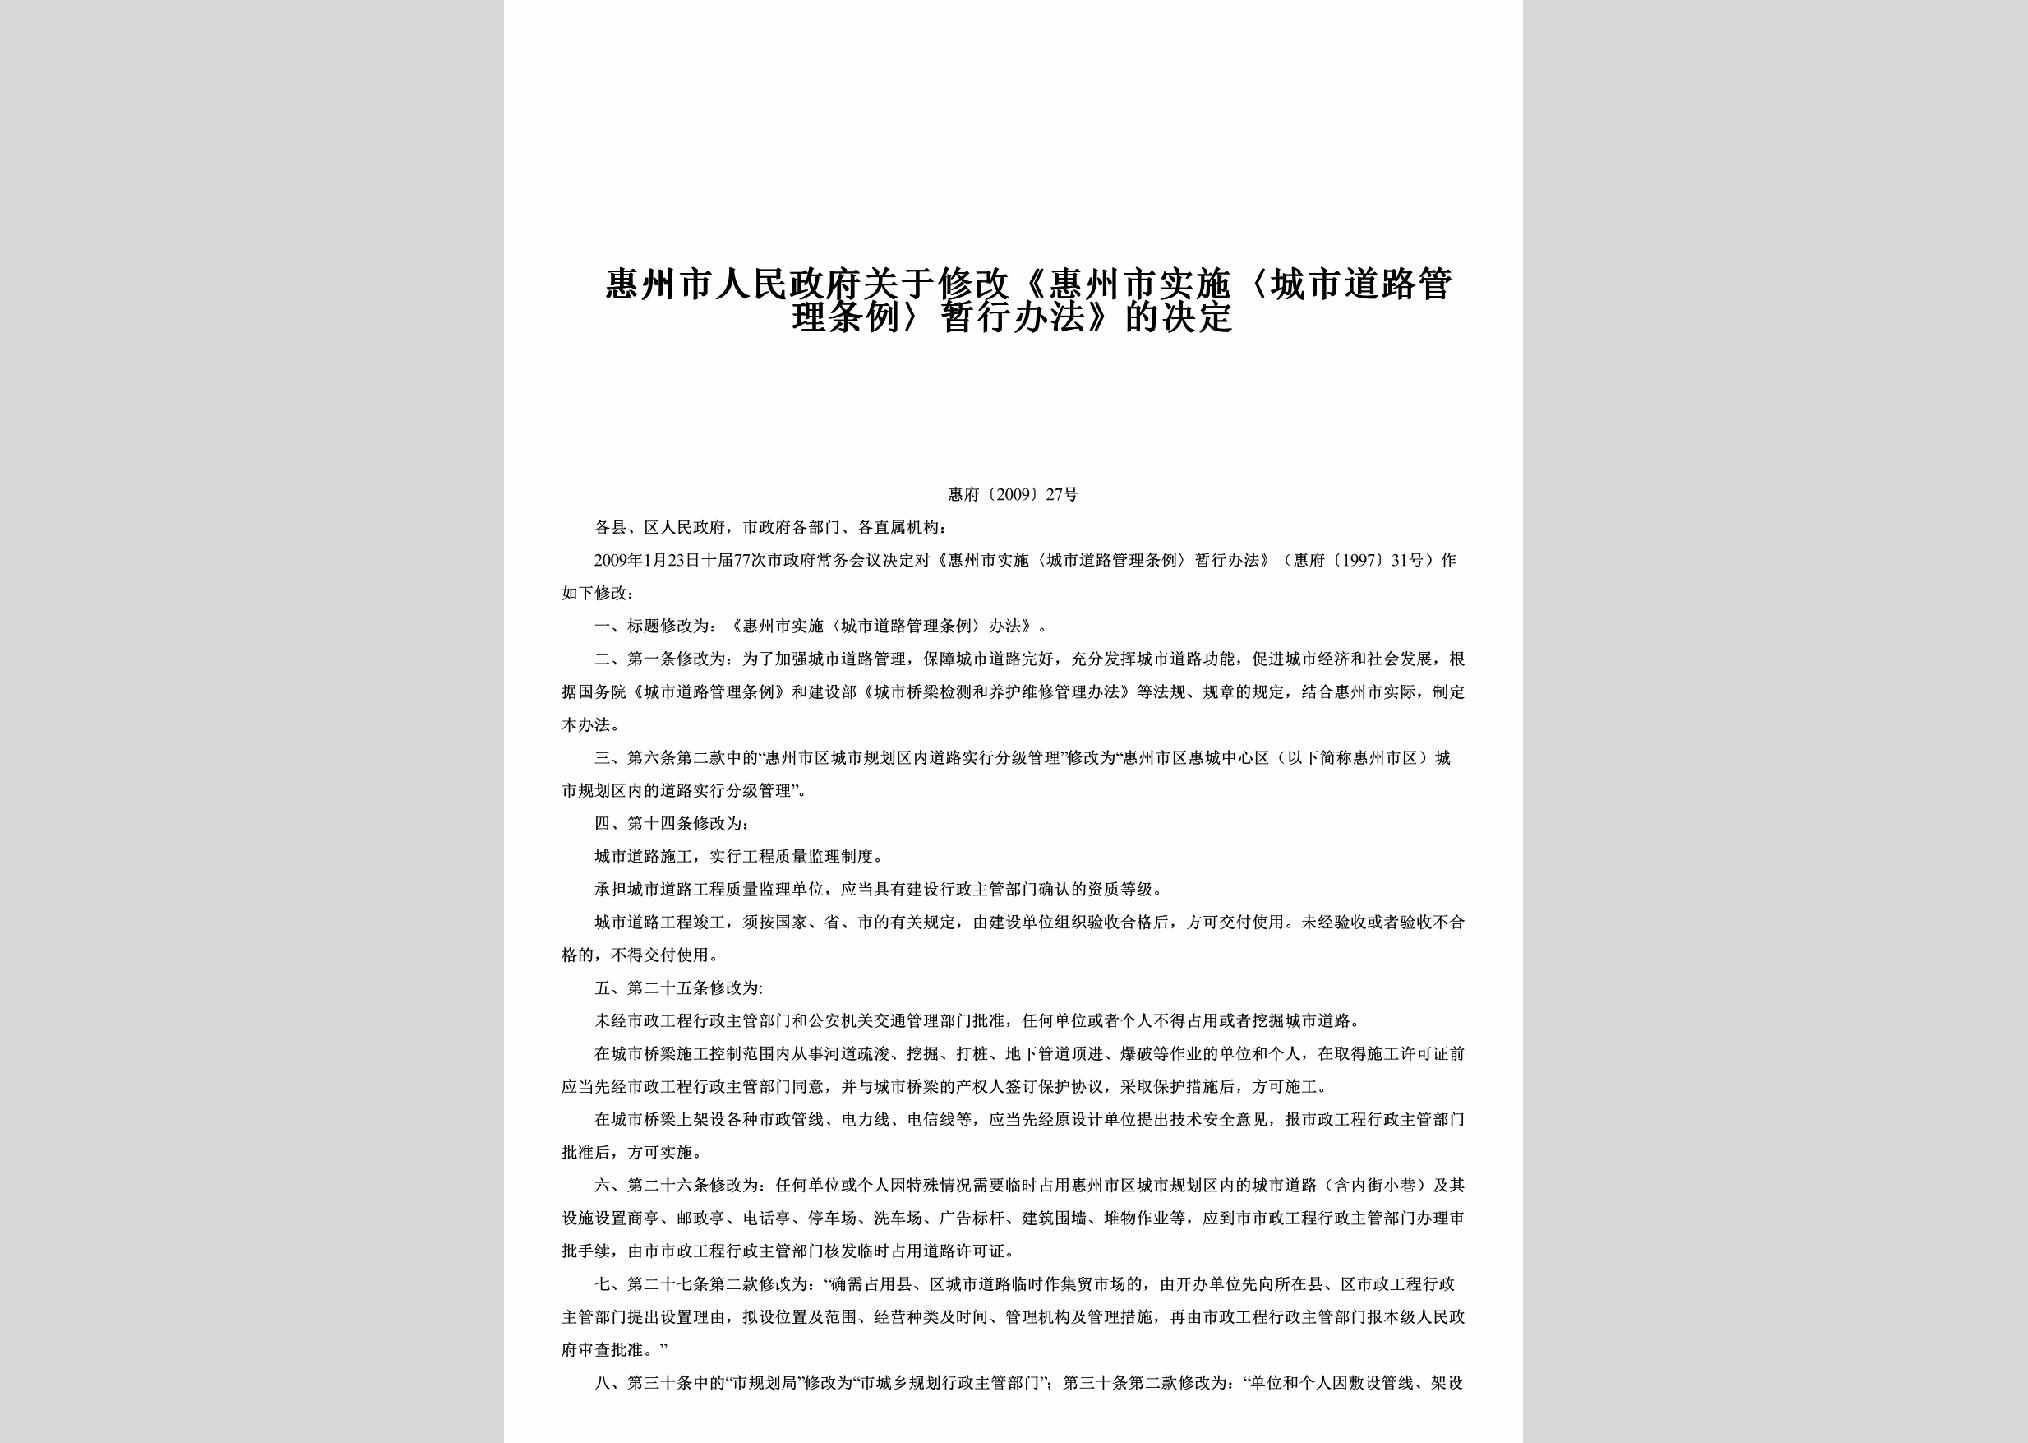 惠府[2009]27号：关于修改《惠州市实施〈城市道路管理条例〉暂行办法》的决定